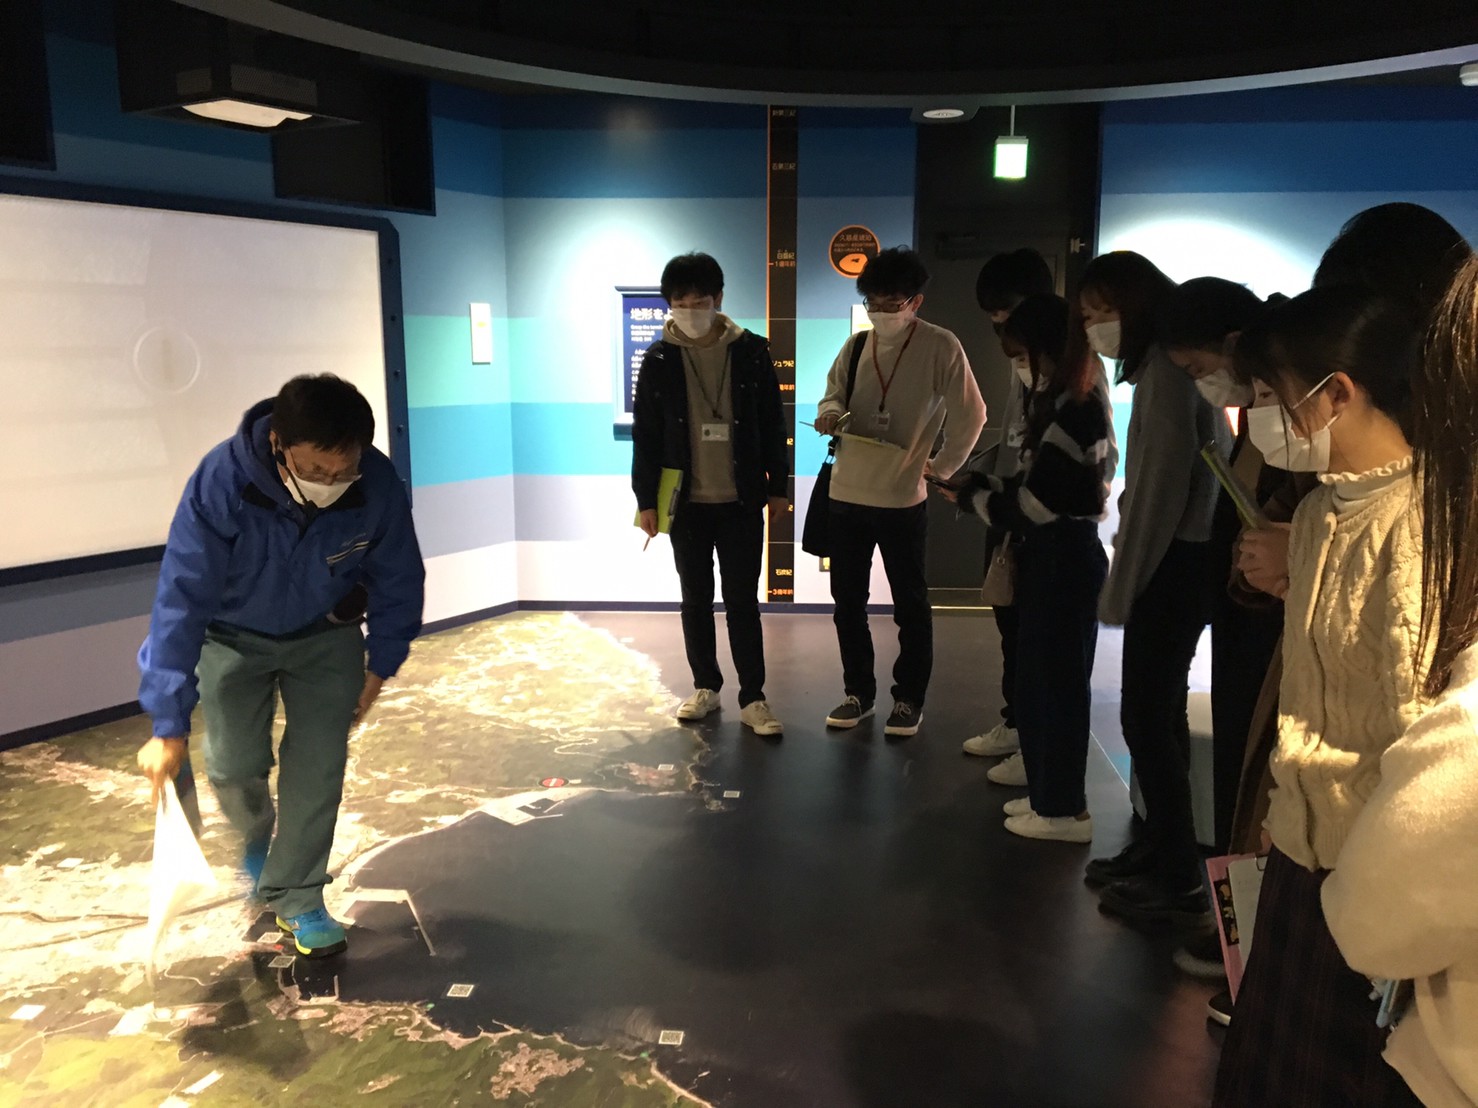 床に描かれている久慈市のマップを基に、震災時の津波の浸水域について聞きました